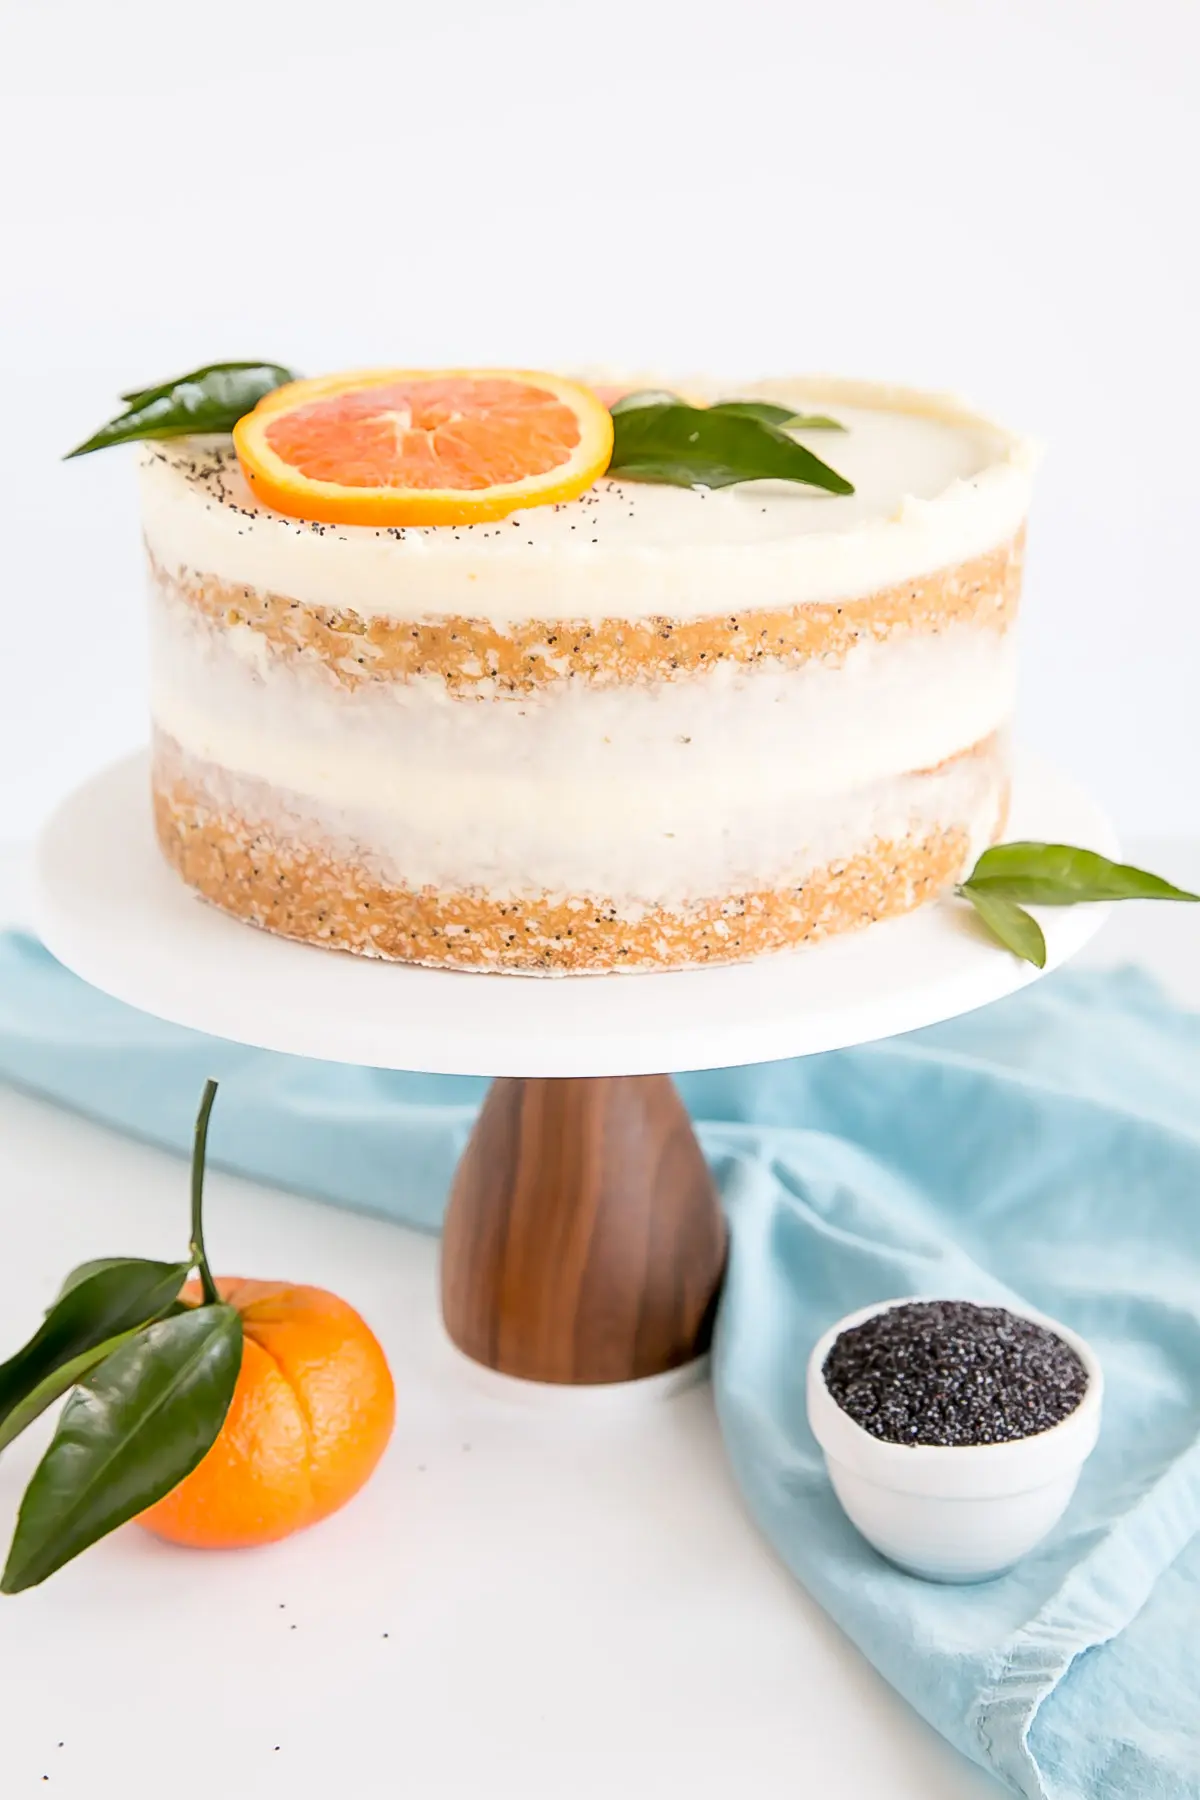 orange poppy seed cake decorated naked cake style.